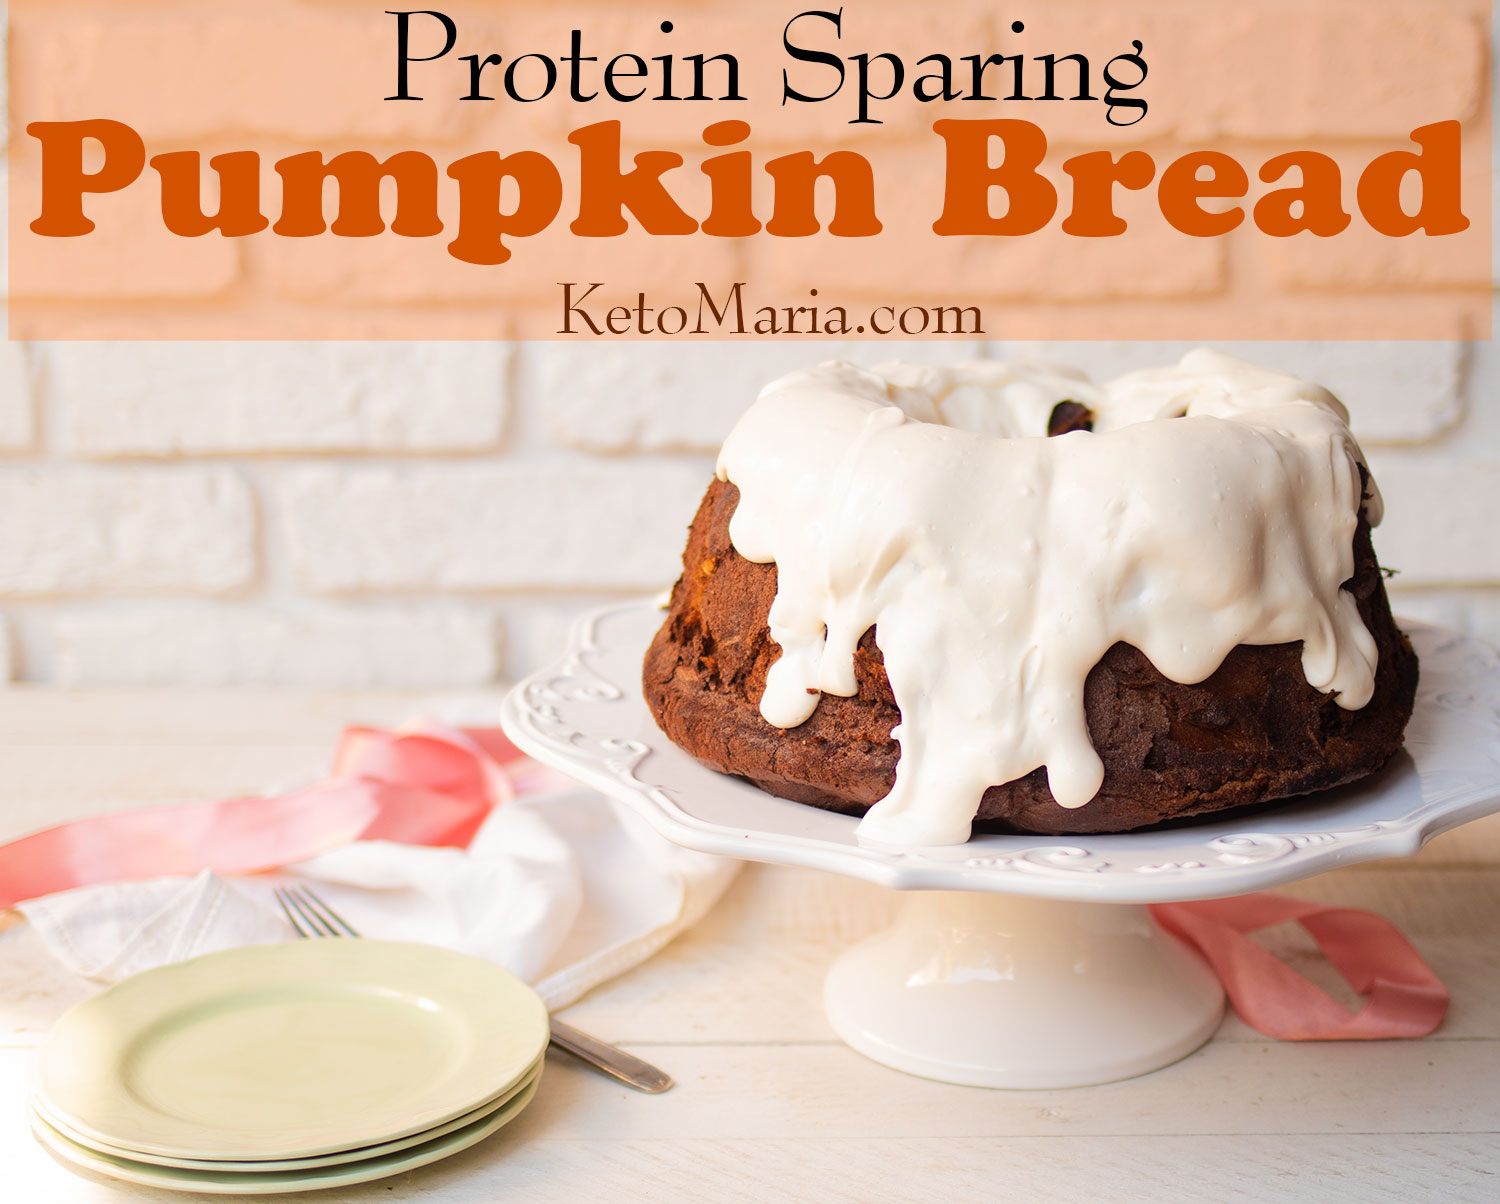 Protein Sparing Pumpkin Bread